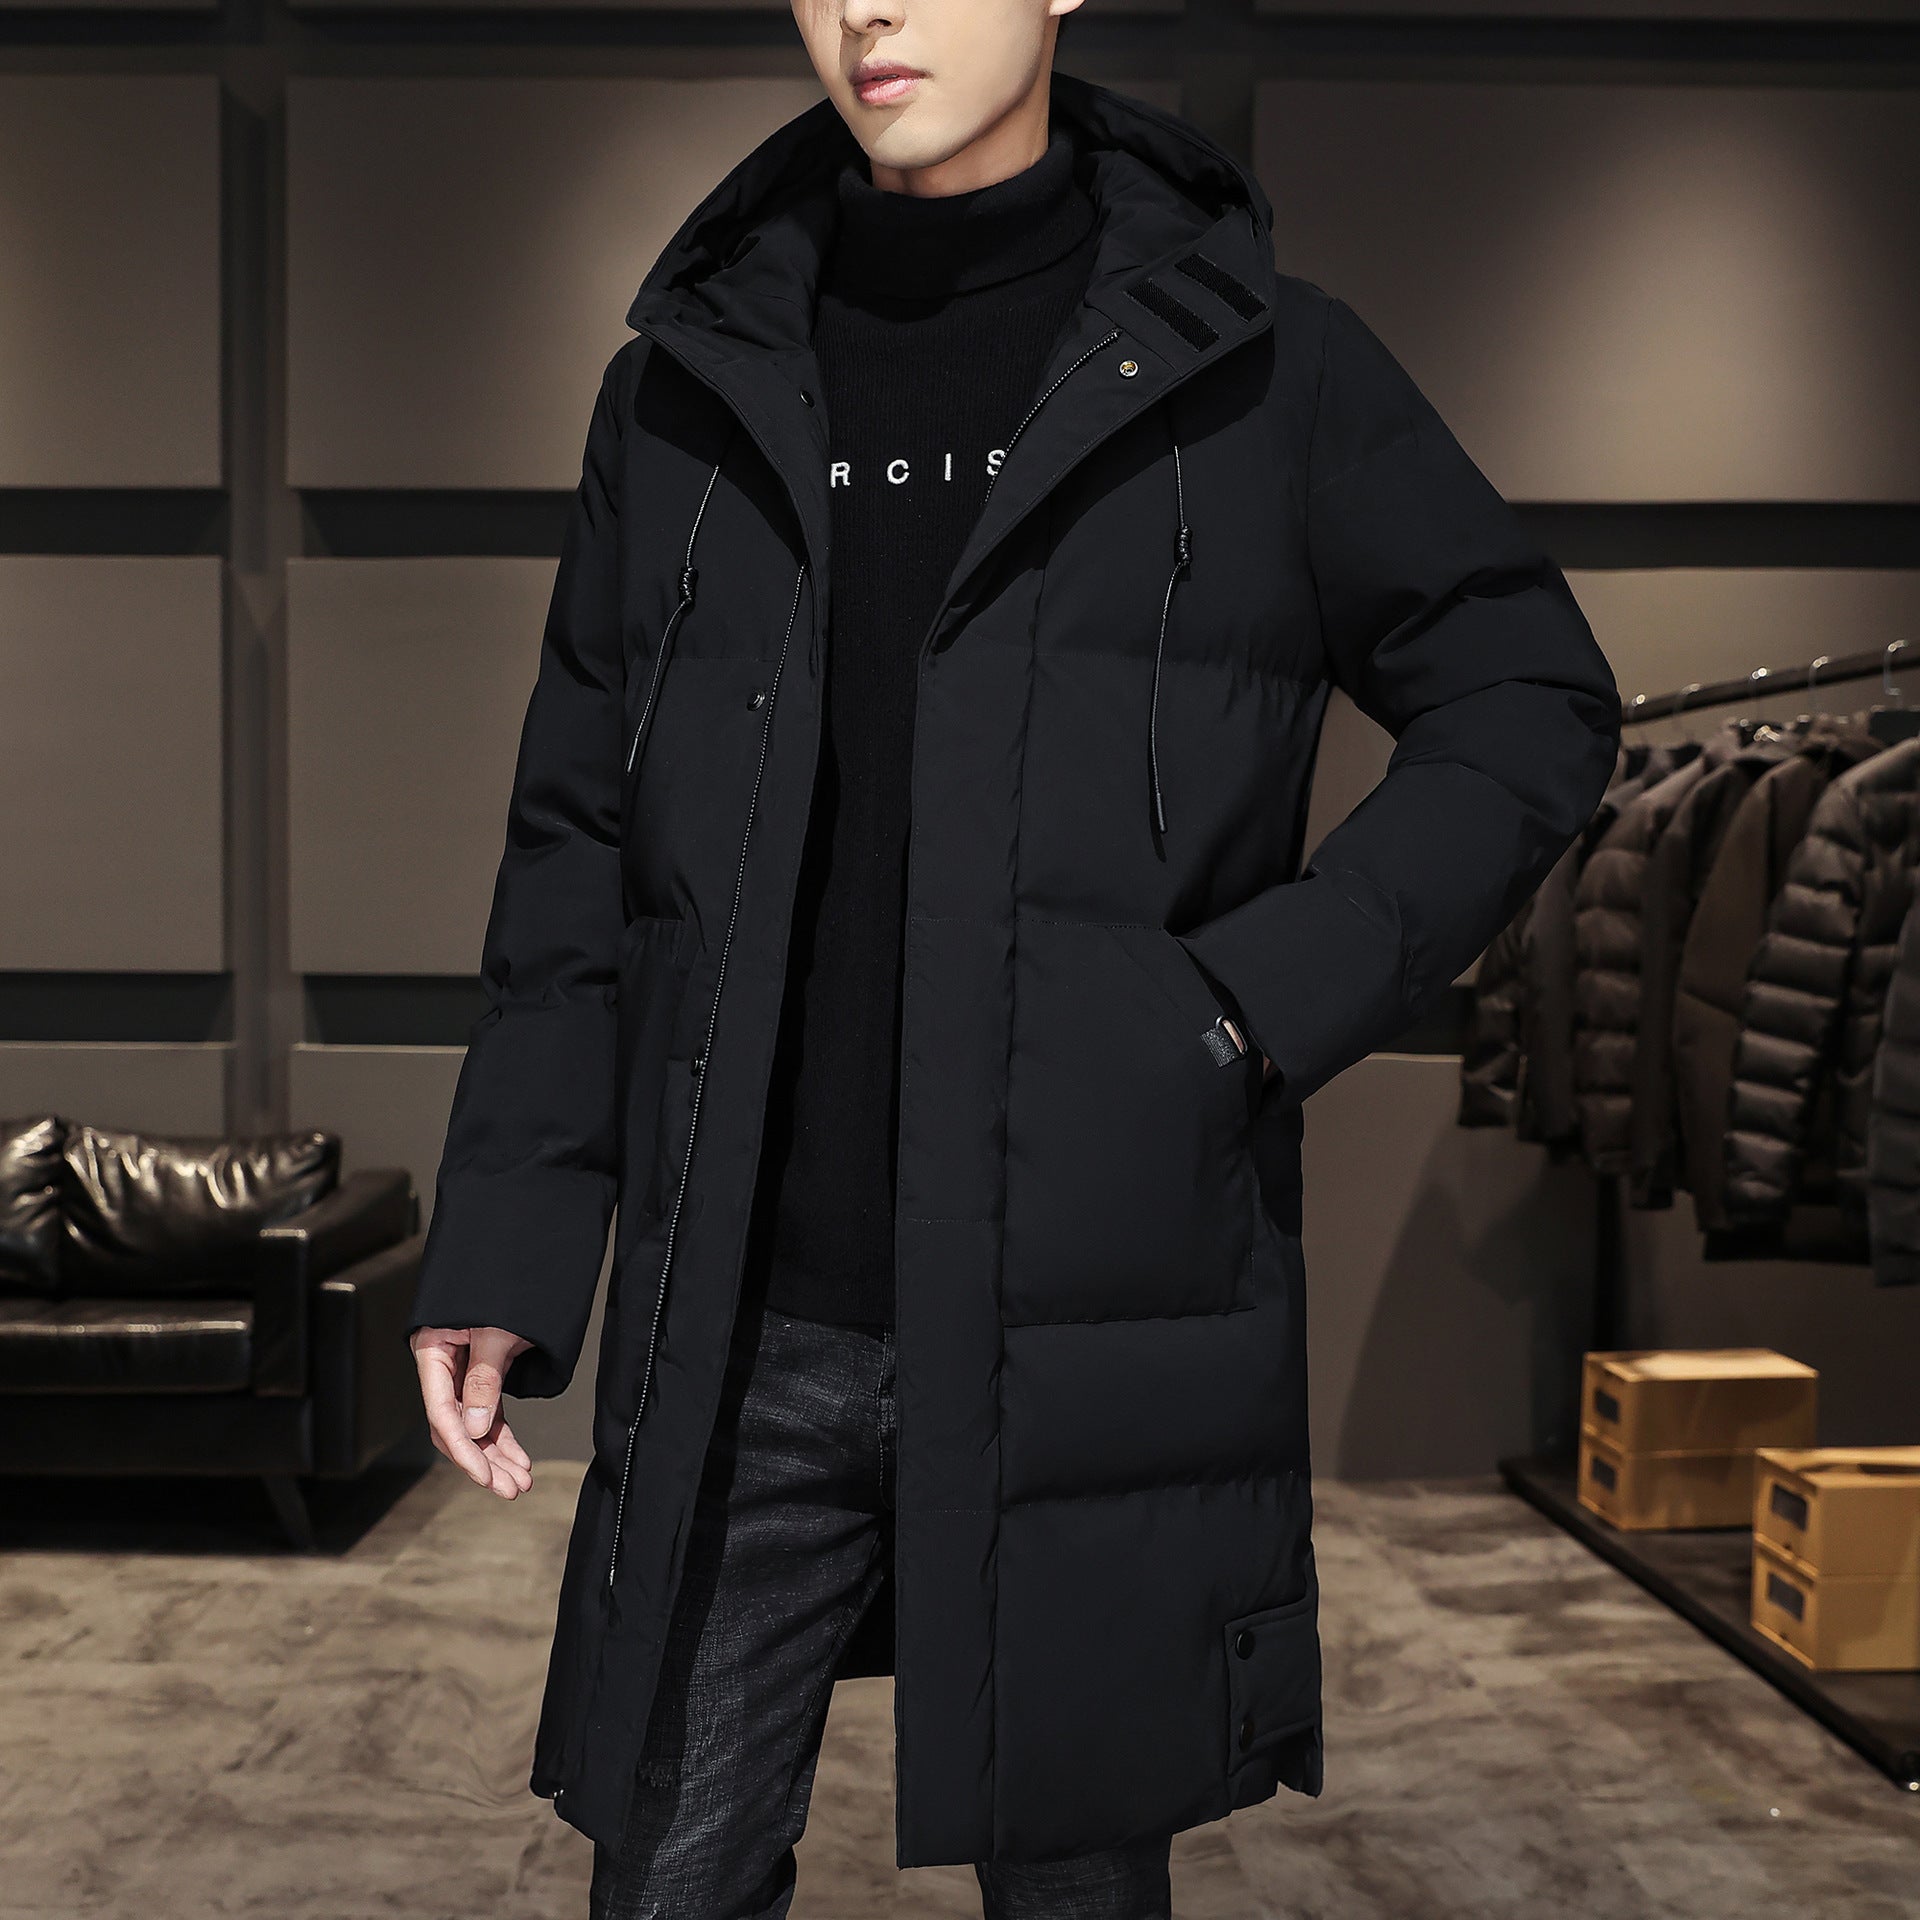 Plus Size Men's Winter Cotton Coats - Thick Mid-length